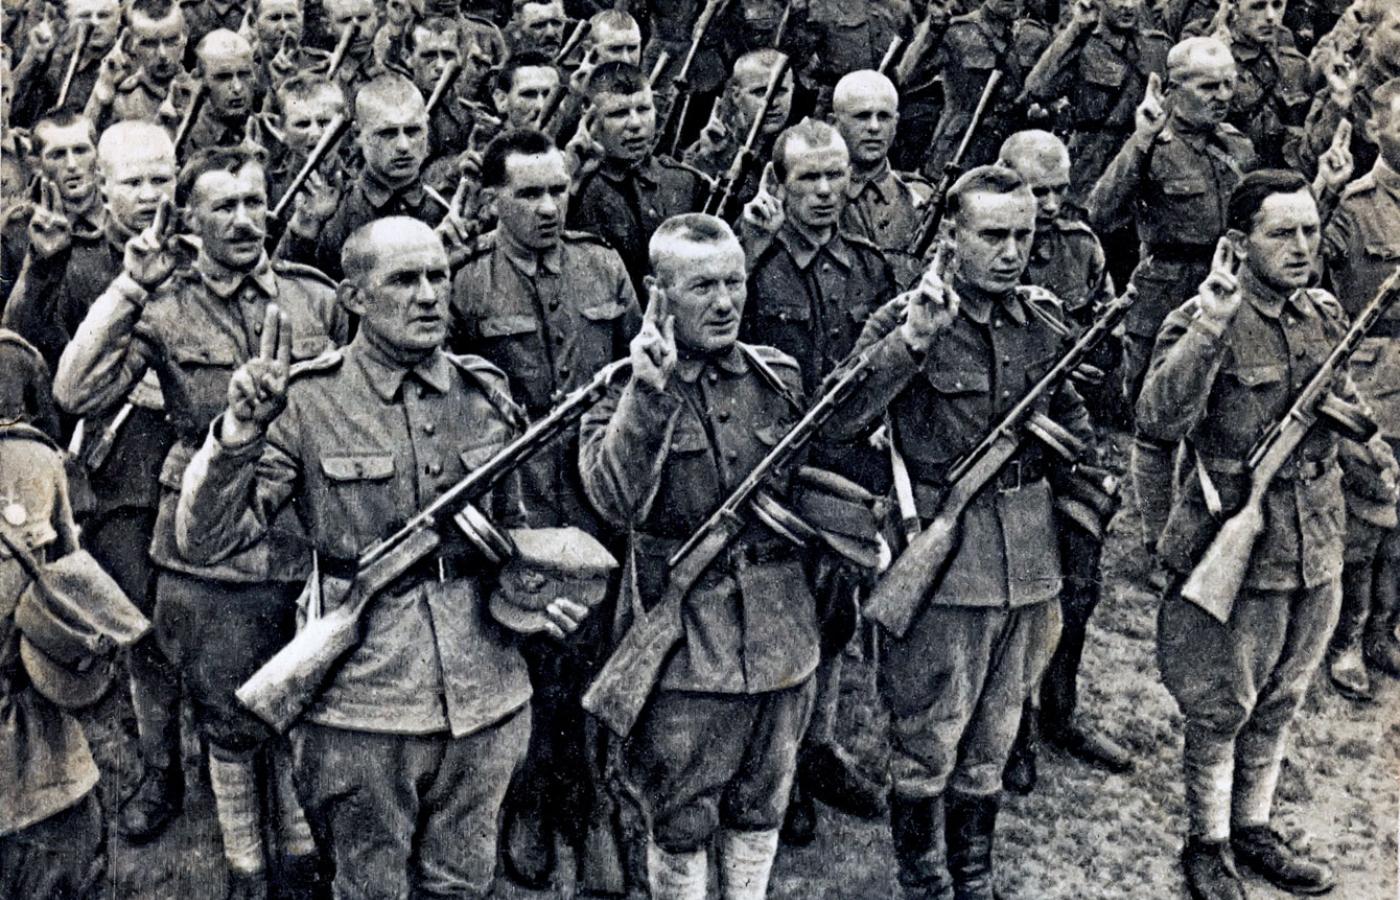 Przysięga polskiej Dywizji im. Tadeusza Kościuszki, utworzonej w ZSRR, składana w rocznicę bitwy pod Grunwaldem, 15 lipca 1943 r.